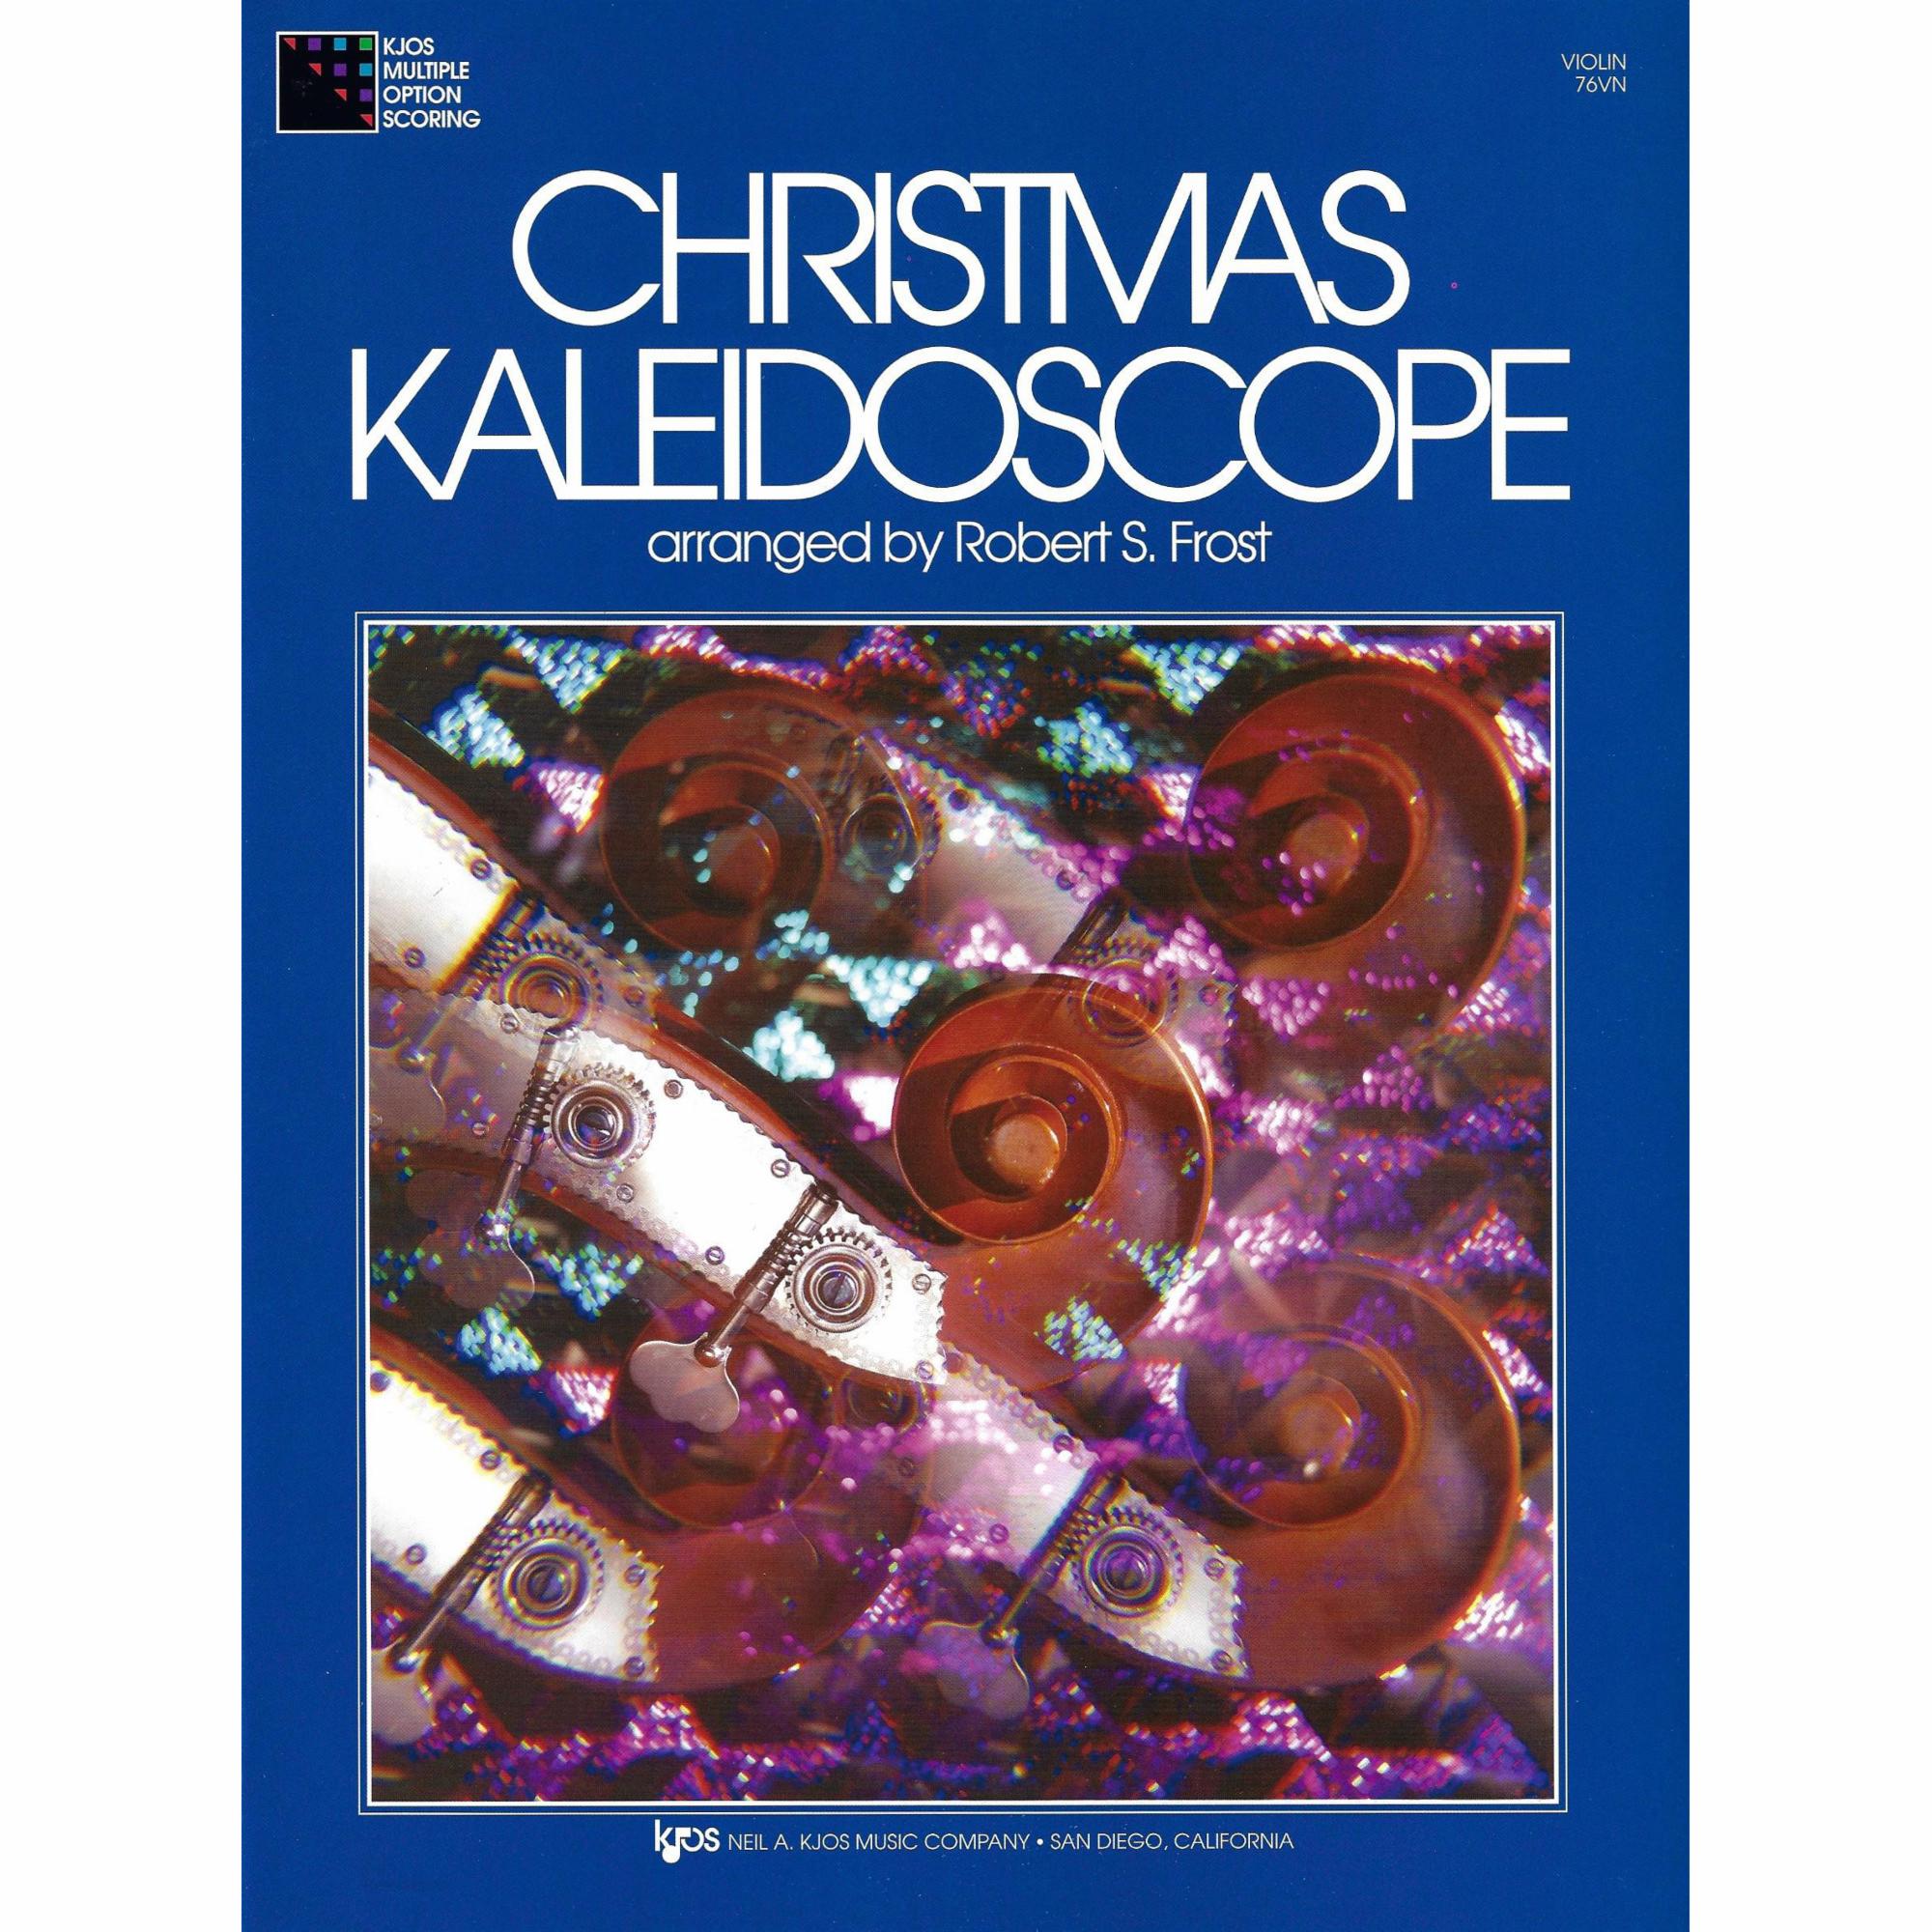 Christmas Kaleidoscope